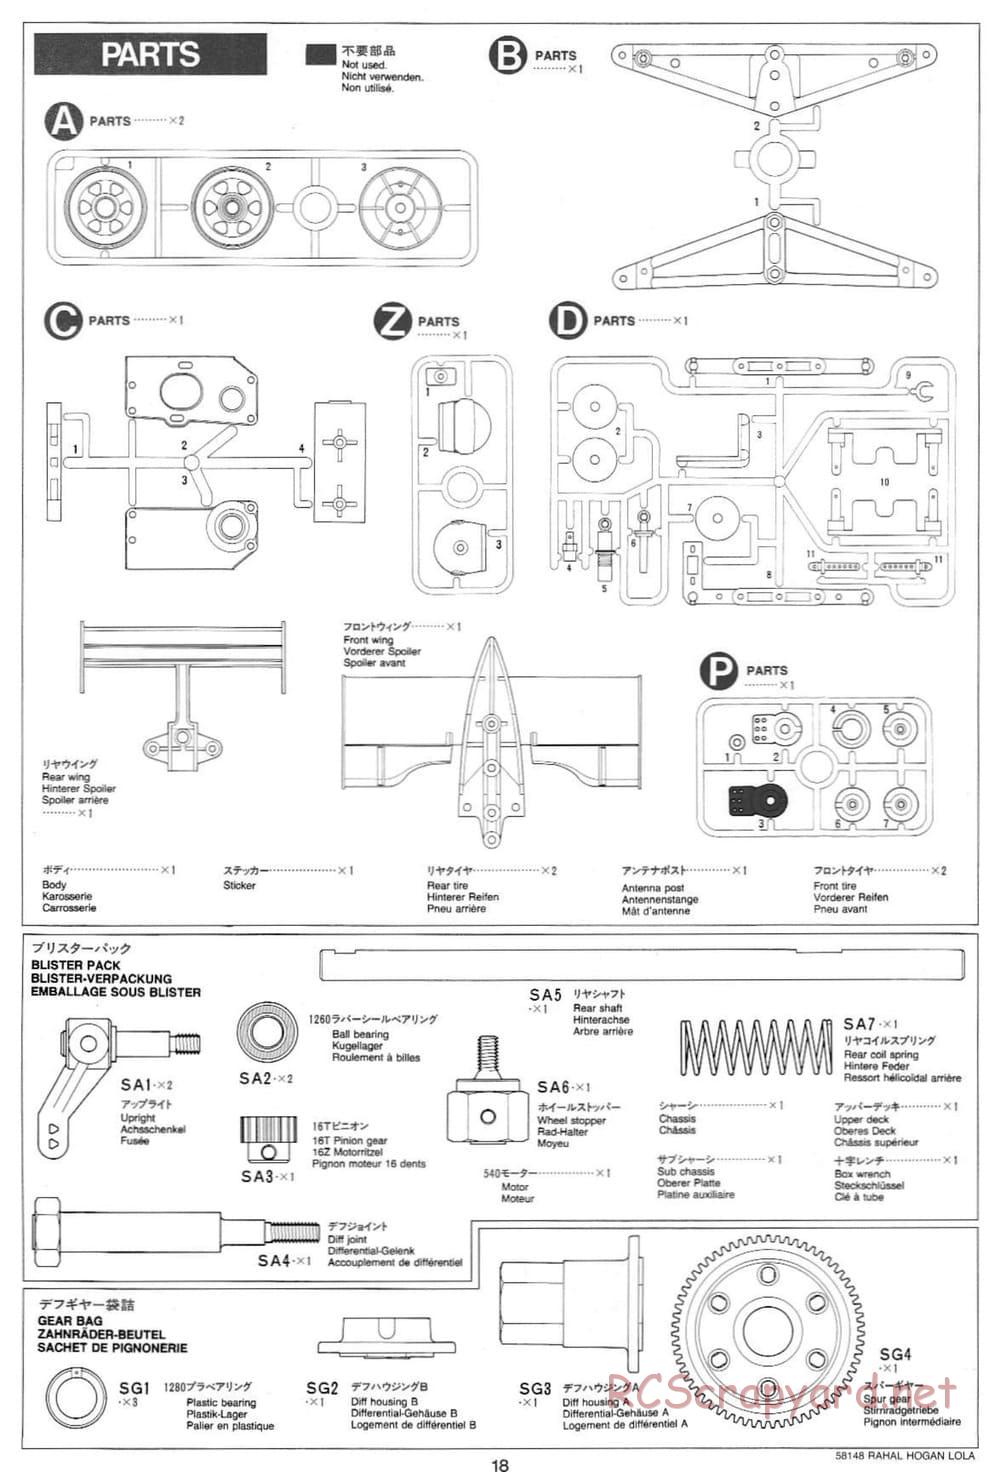 Tamiya - Rahal-Hogan Motorola Lola T94/00 Honda - F103L Chassis - Manual - Page 18